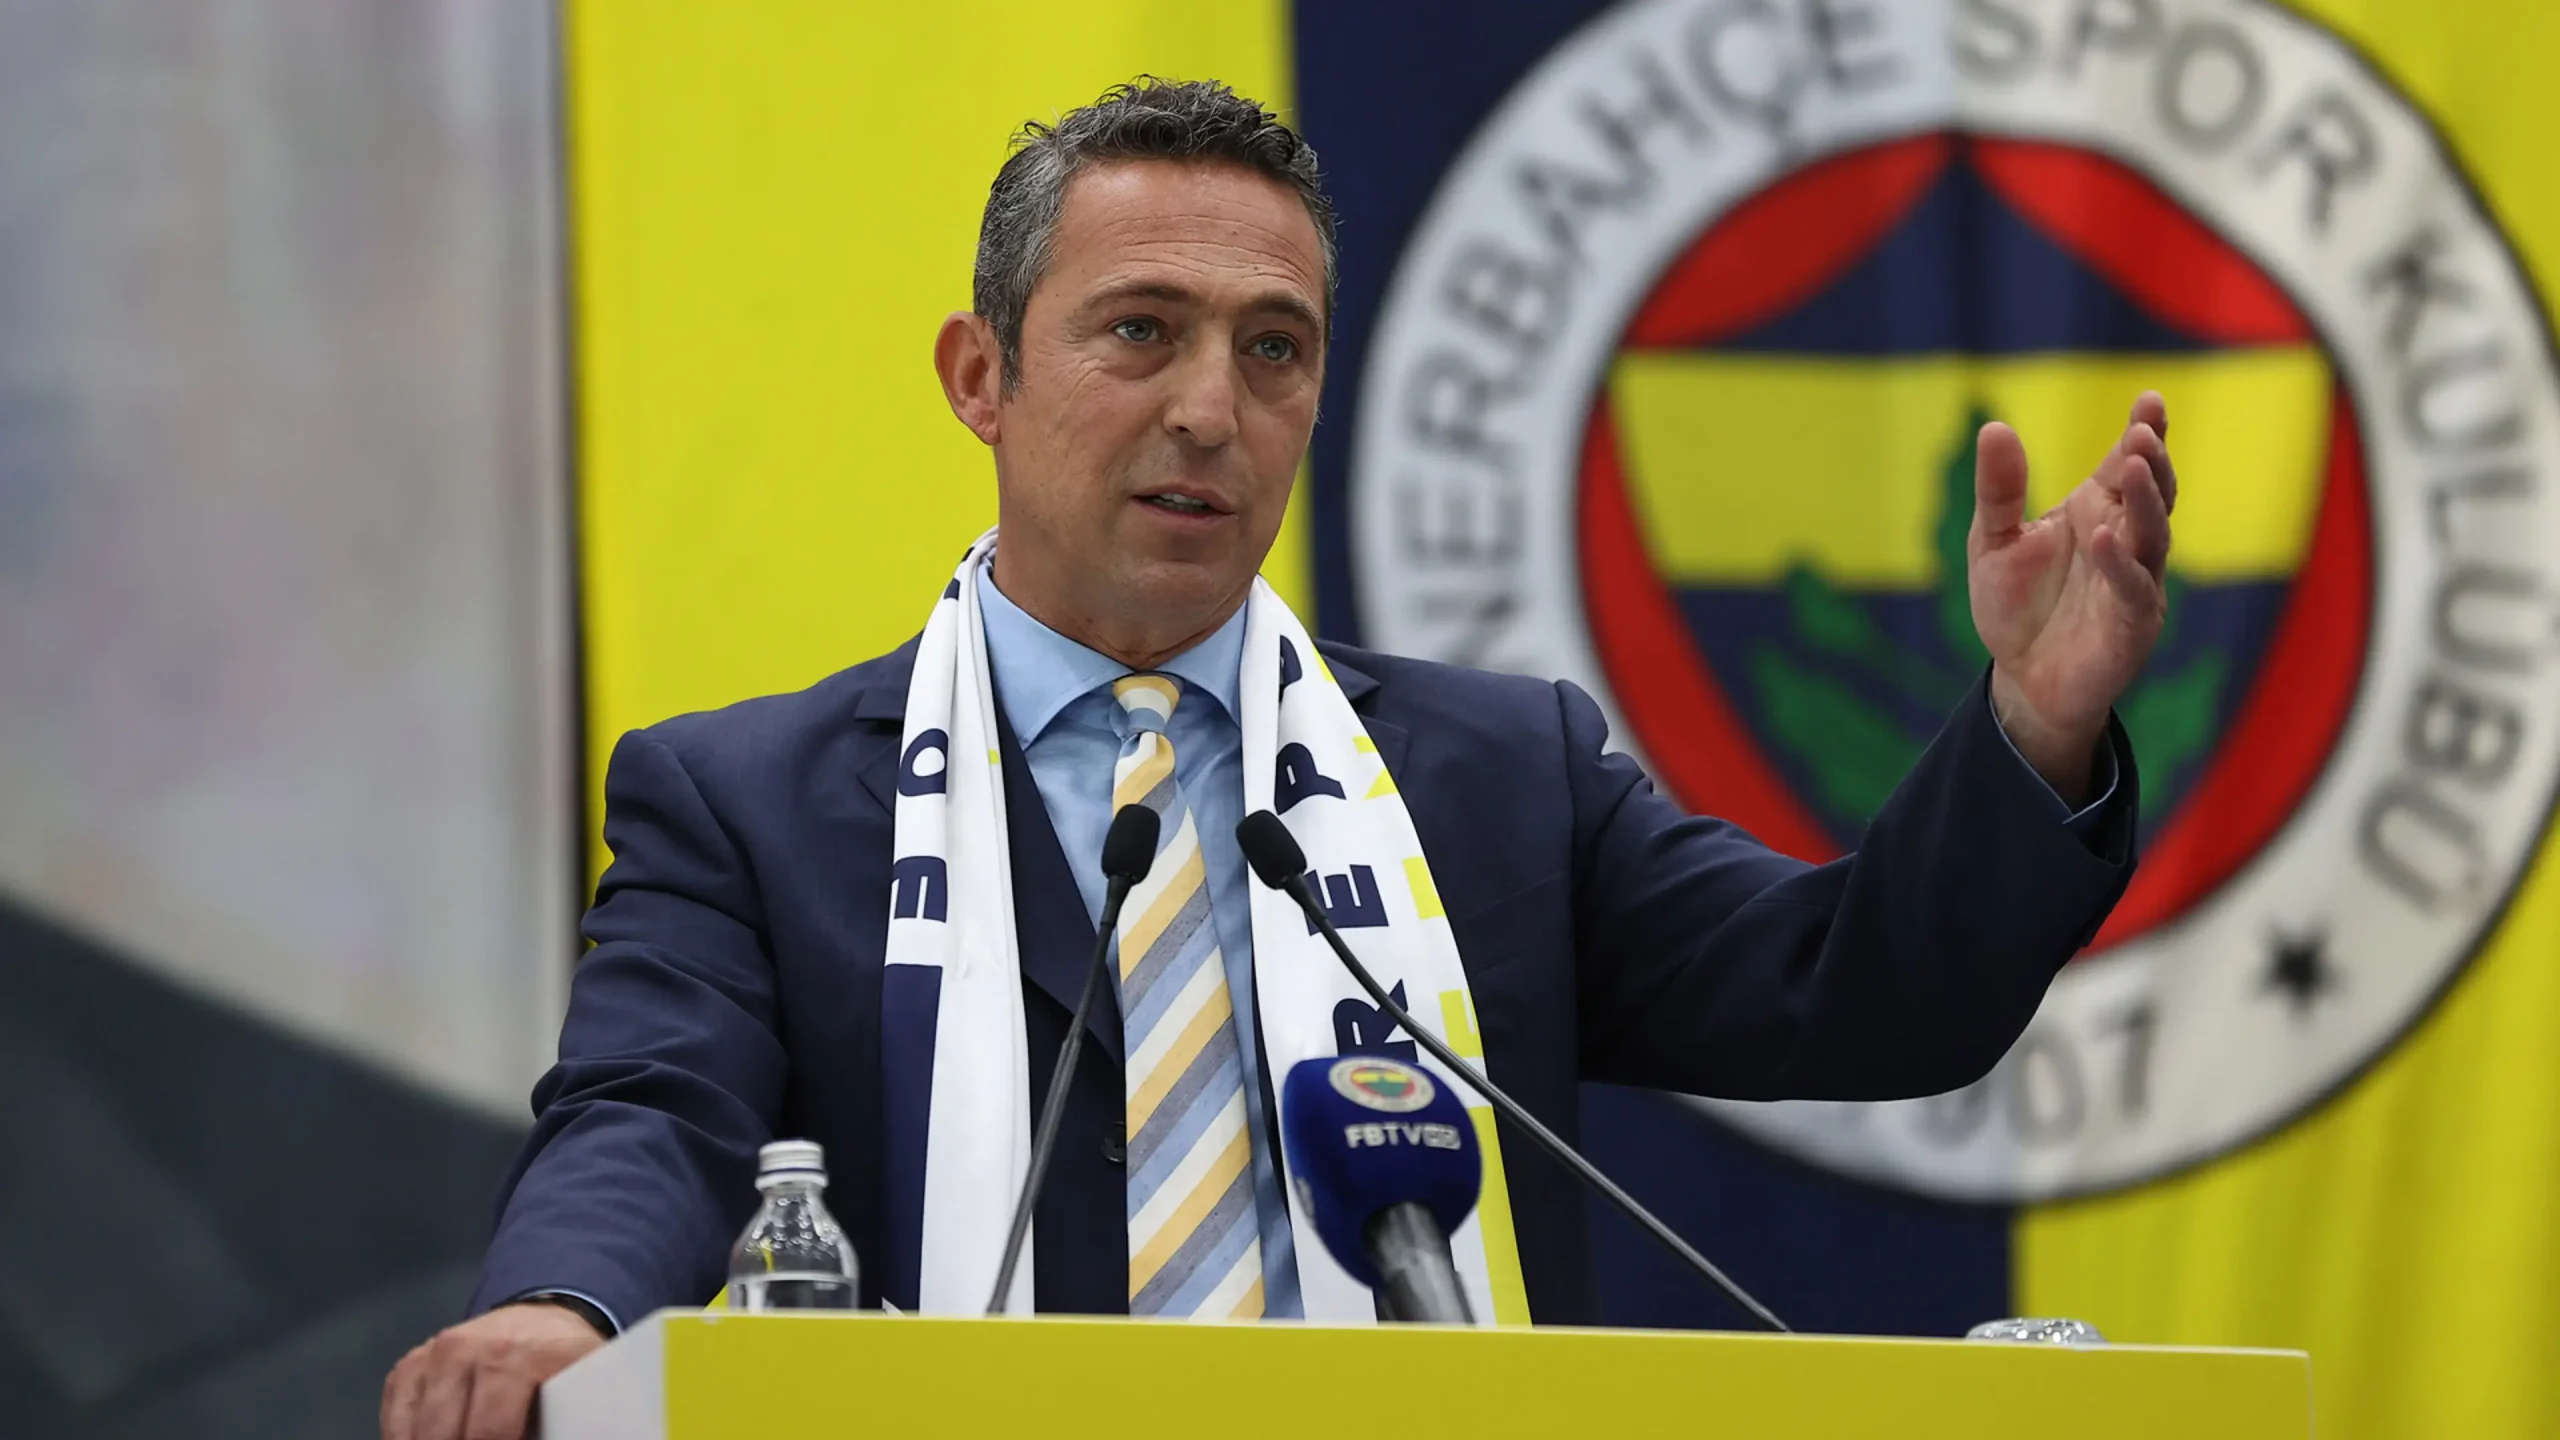 Fenerbahçe'de tarihi olağanüstü genel kurul bugün toplanıyor! Genel kurul nerede, saat kaçta?